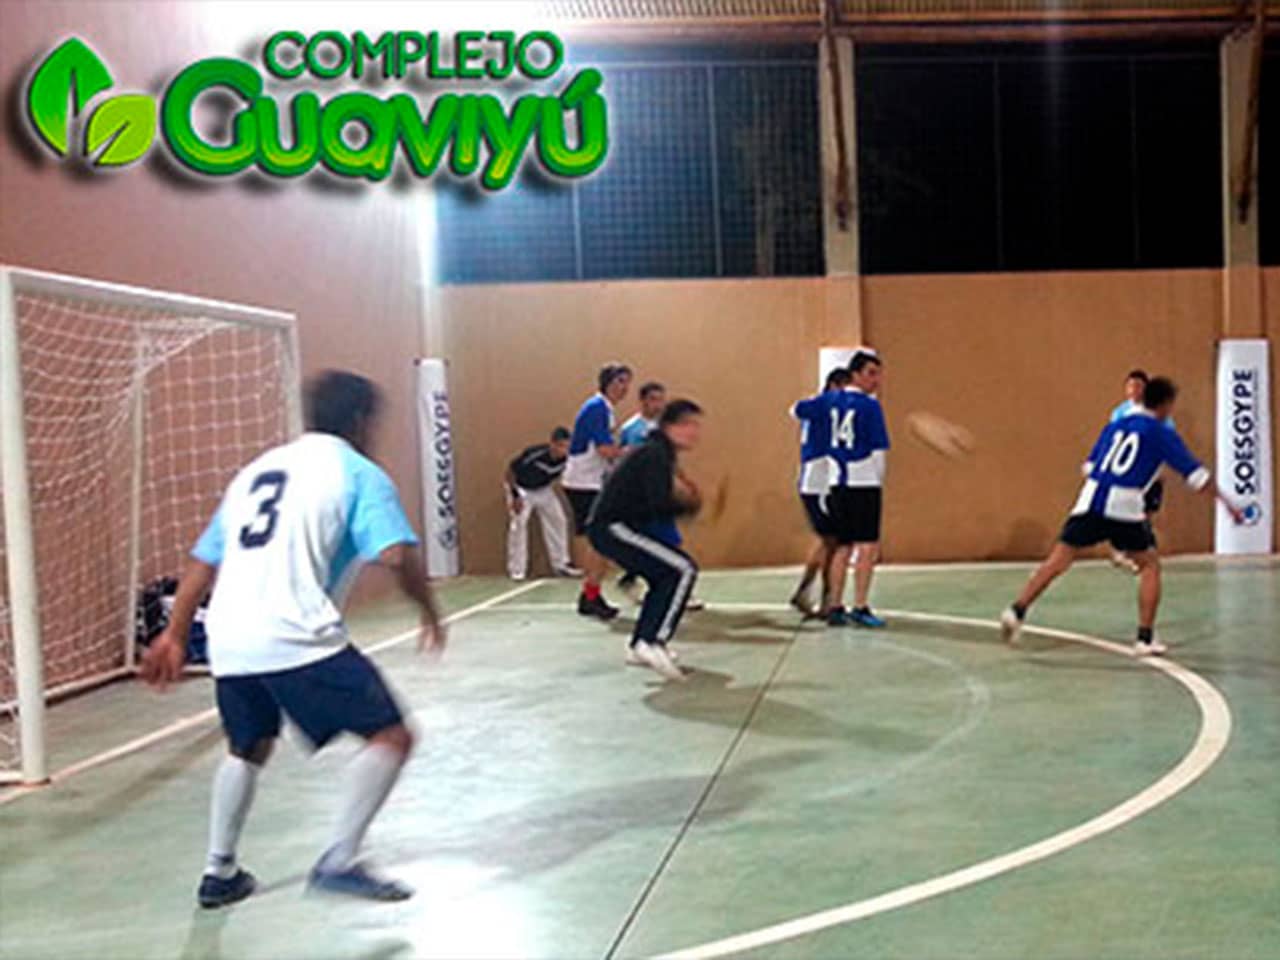 Estacioneros del SOESGyPE Misiones estrenan complejo con campeonato de fútbol 5 en GUAVIYU